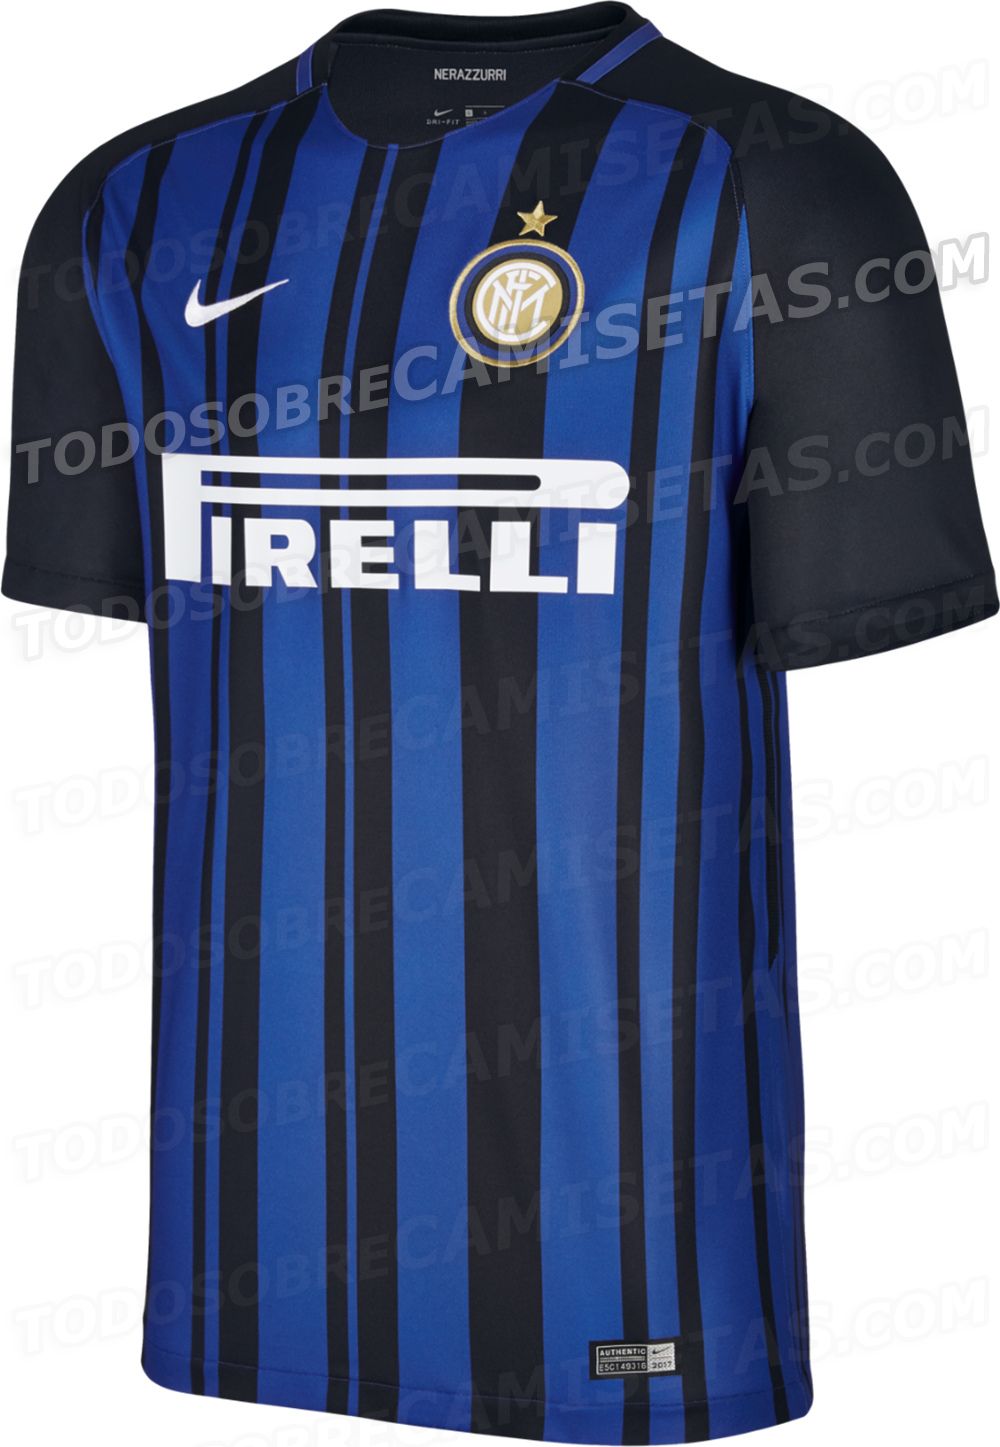 Inter Milan 2017-18 Nike Home Kit LEAKED